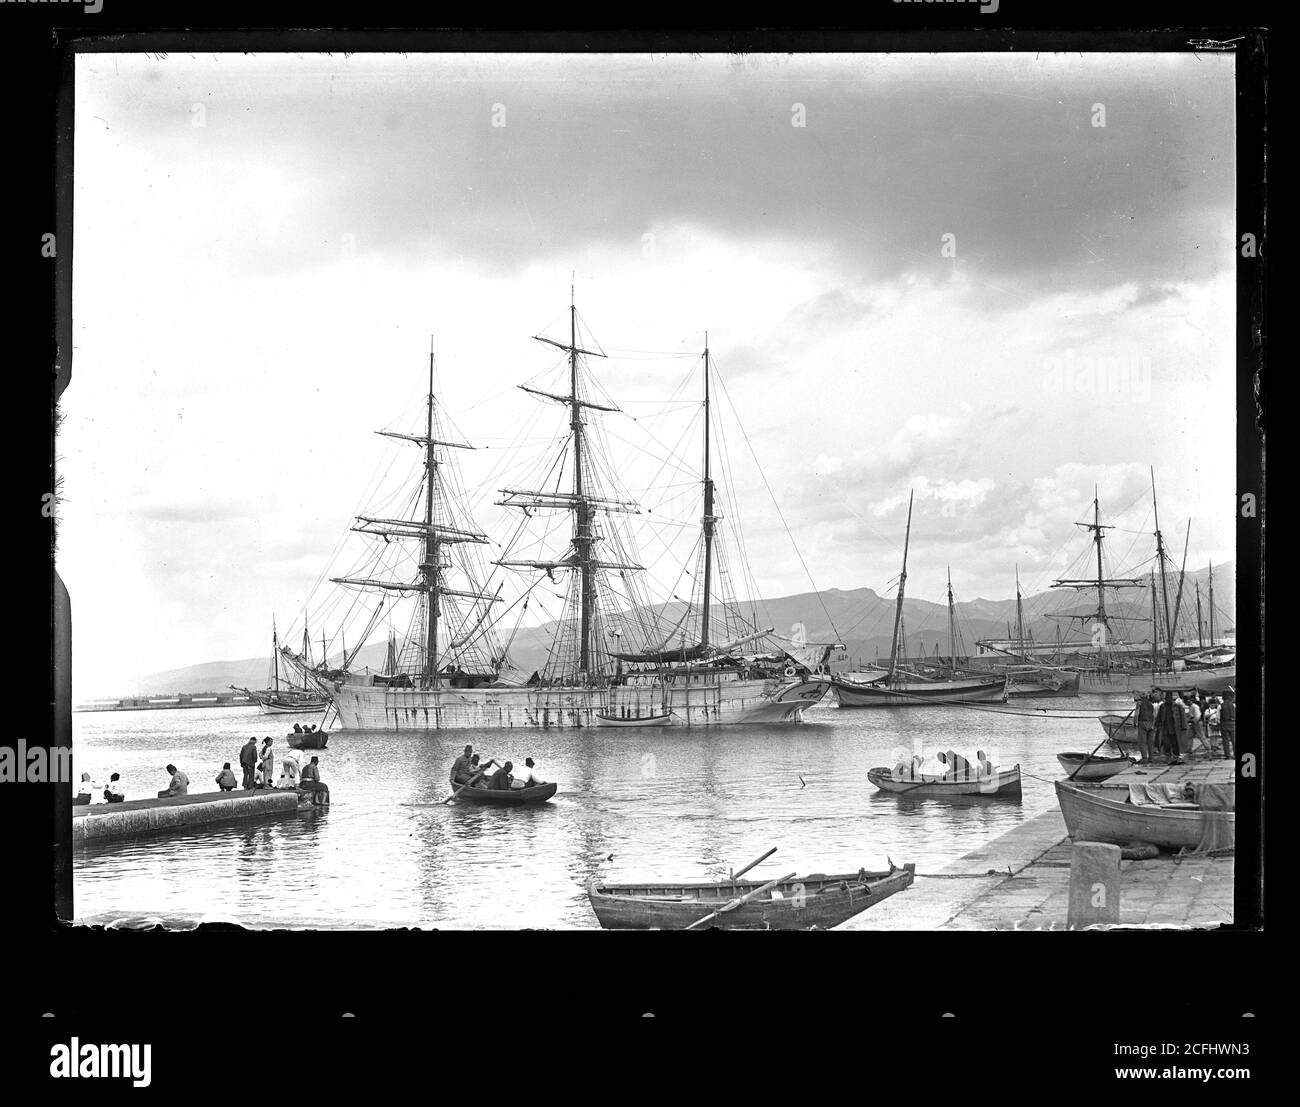 Dreimastbark (Dreimaster) Segelschiff im Hafen von Izmir (Smyrna) Türkei. Fotografie auf Glasplatte aus der Herry W. Schaefer Sammlung um 1910. Stock Photo